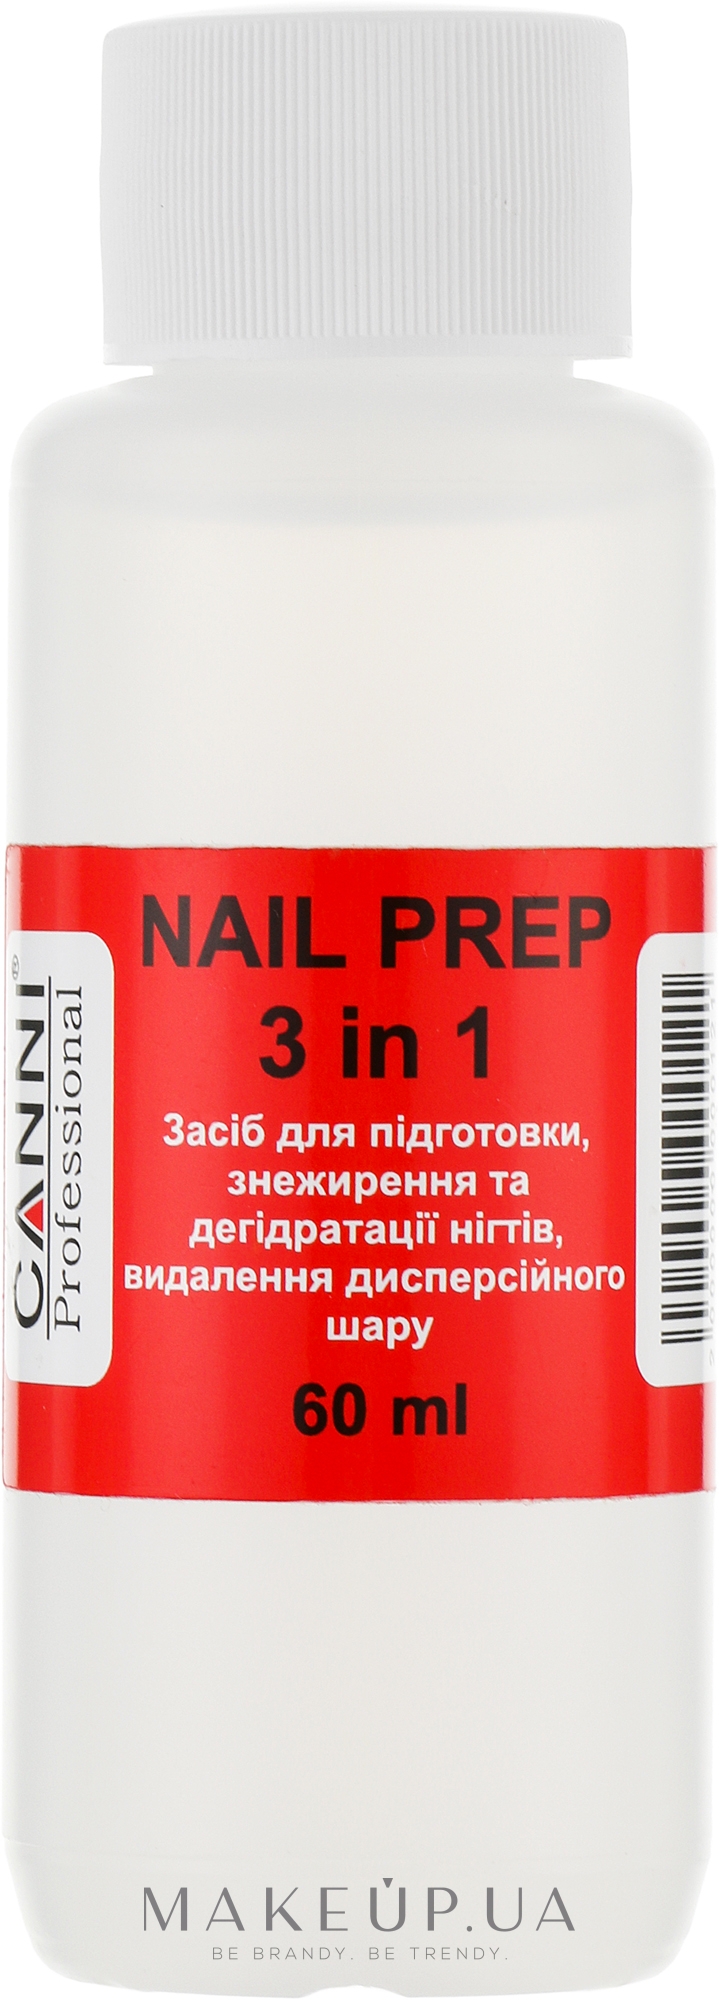 Засіб для знежирення та дегідрататії нігтів - Canni Nail Prep — фото 60ml